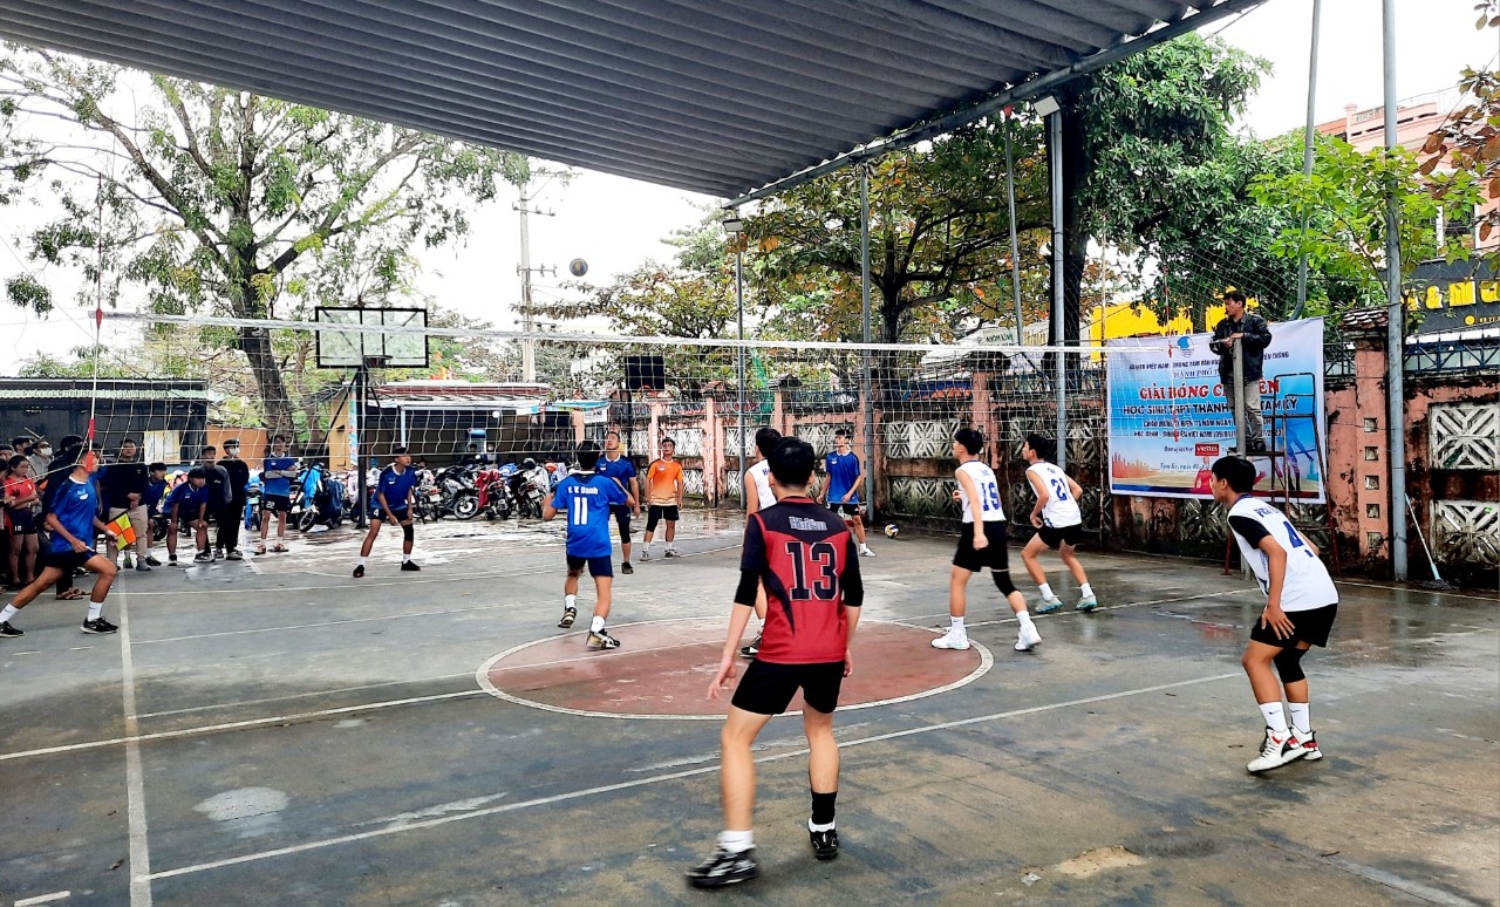 Trận đấu giữa đội bóng trường THPT Lê Quý Đôn (áo xanh) và trường Phan Bội Châu (áo trắng)